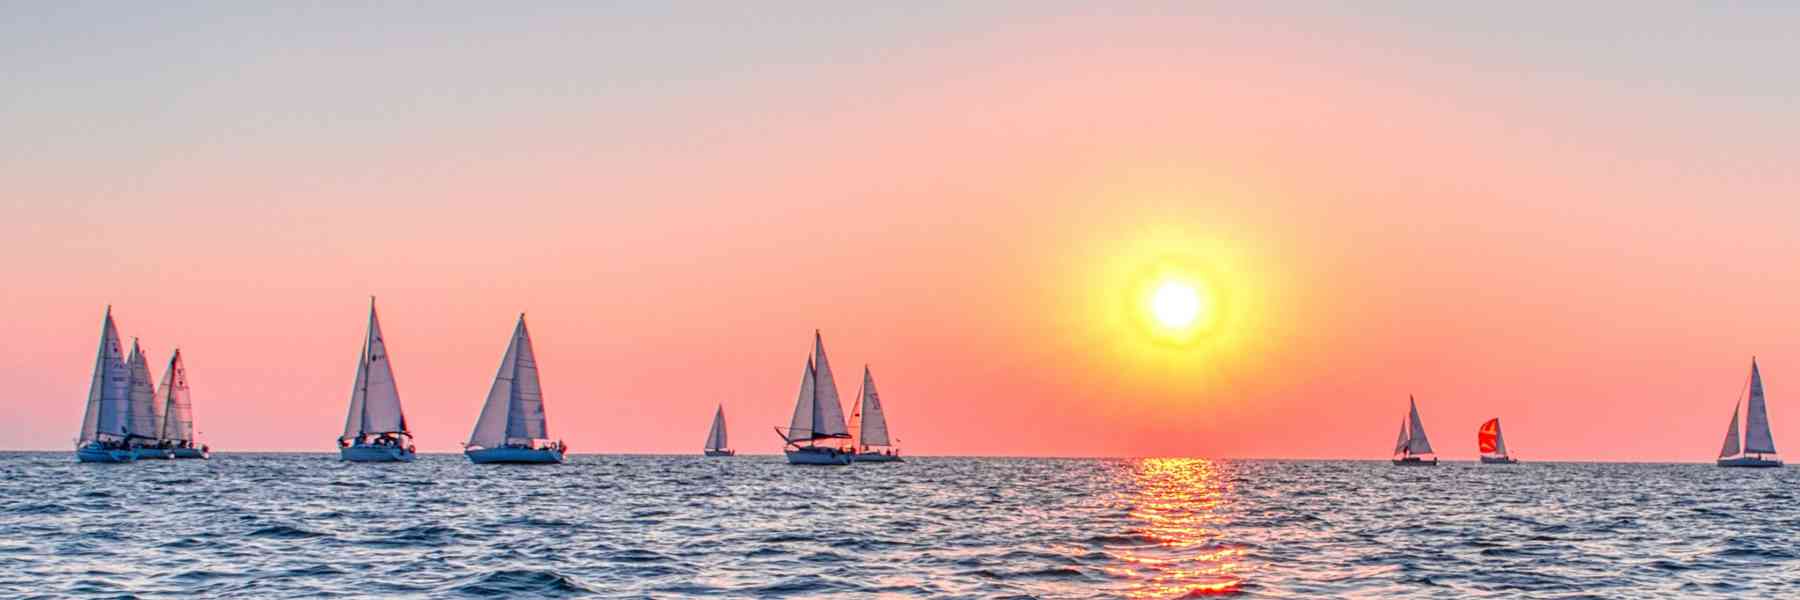 Dawn sailing